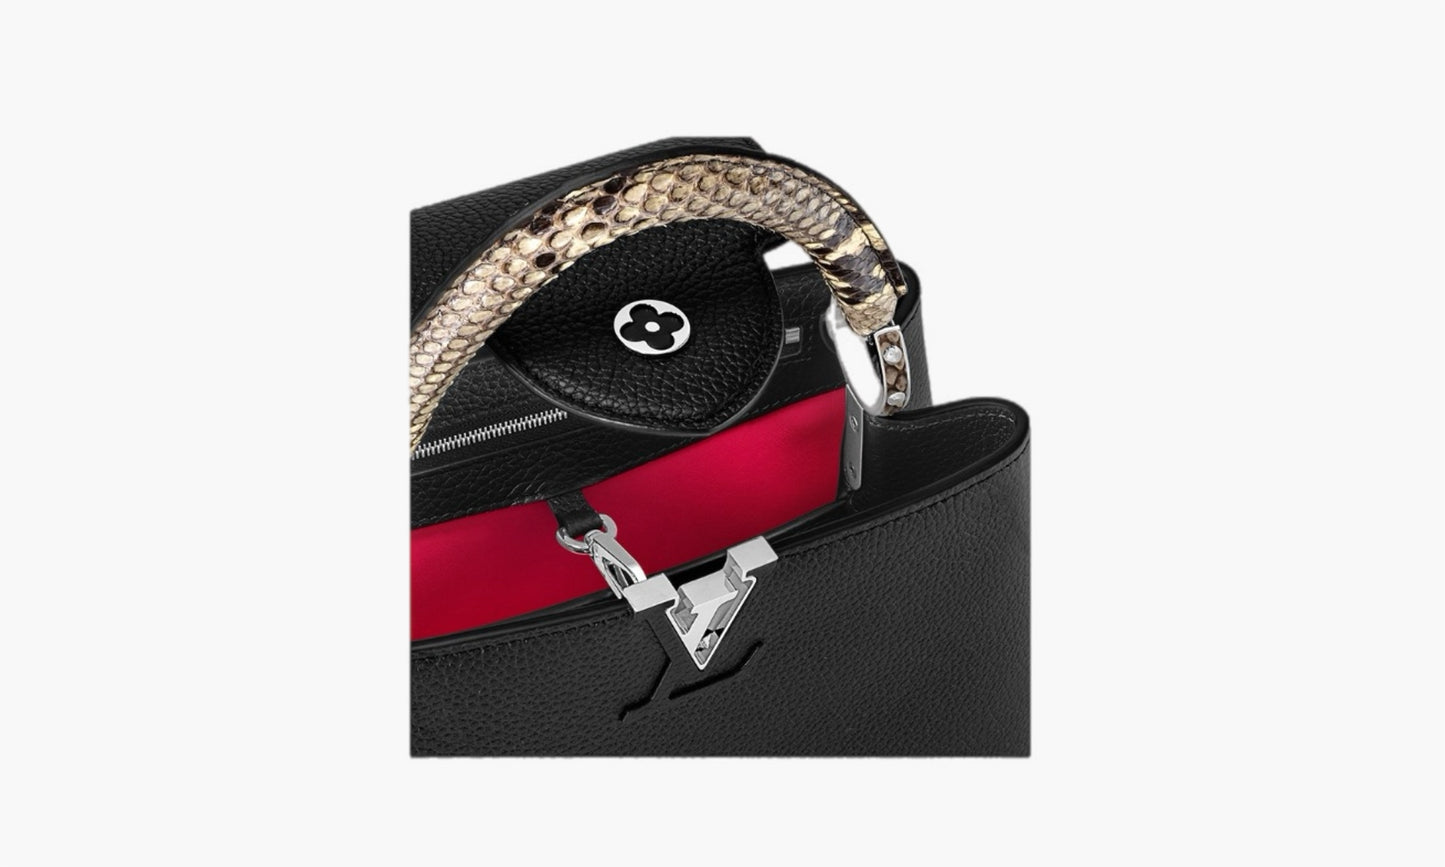 Louis Vuitton Capucines BB Taurillion Leather Noir | The Sortage